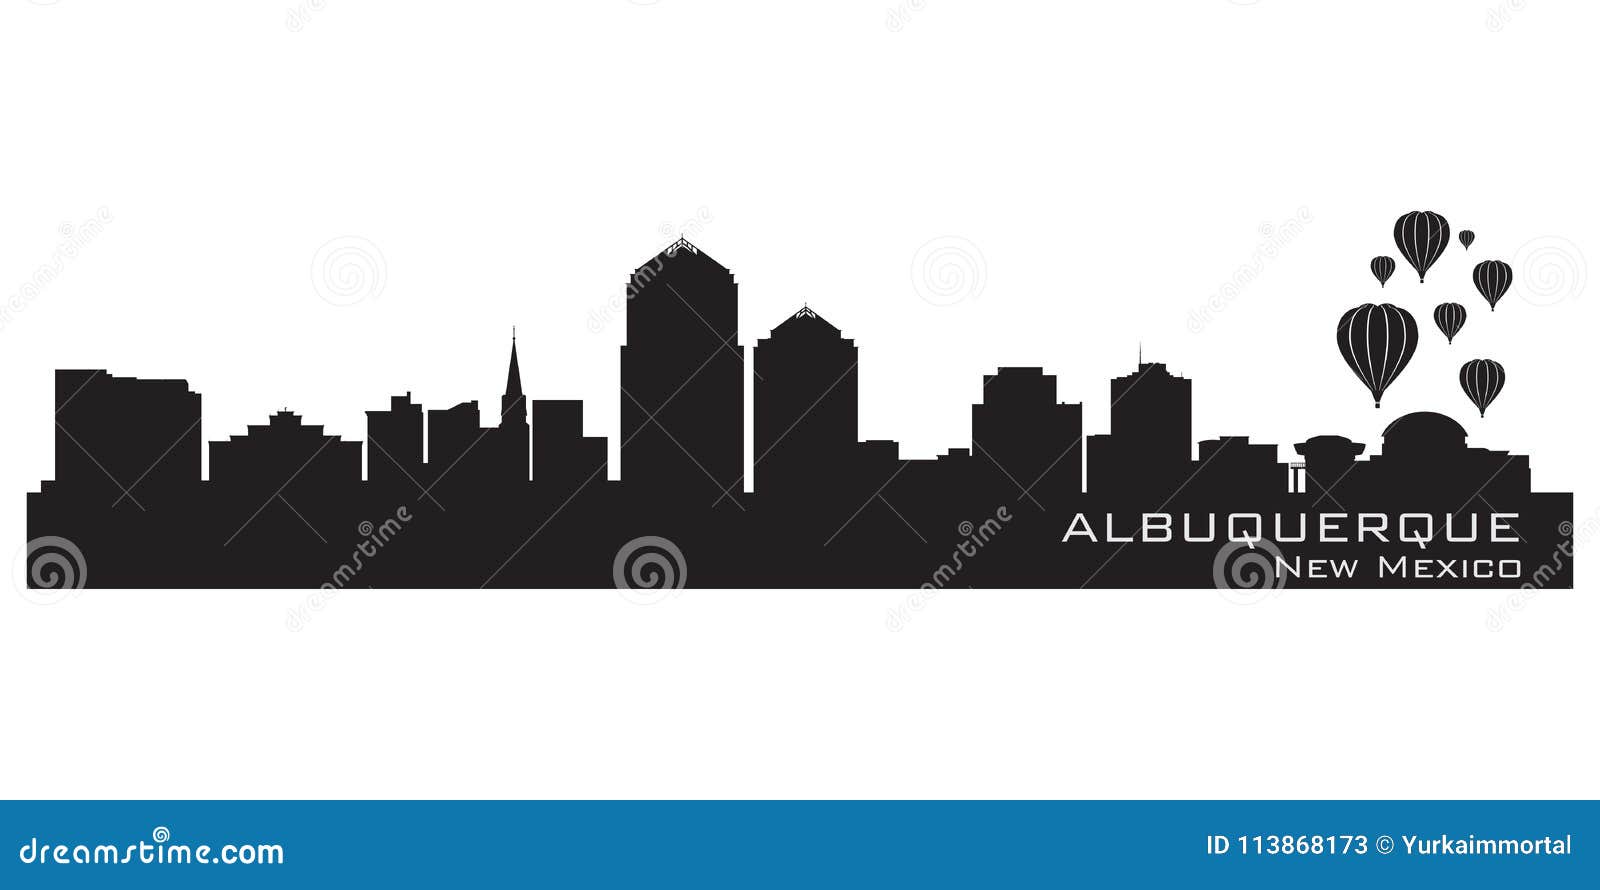 albuquerque, new mexico city skyline. detailed silhouette.